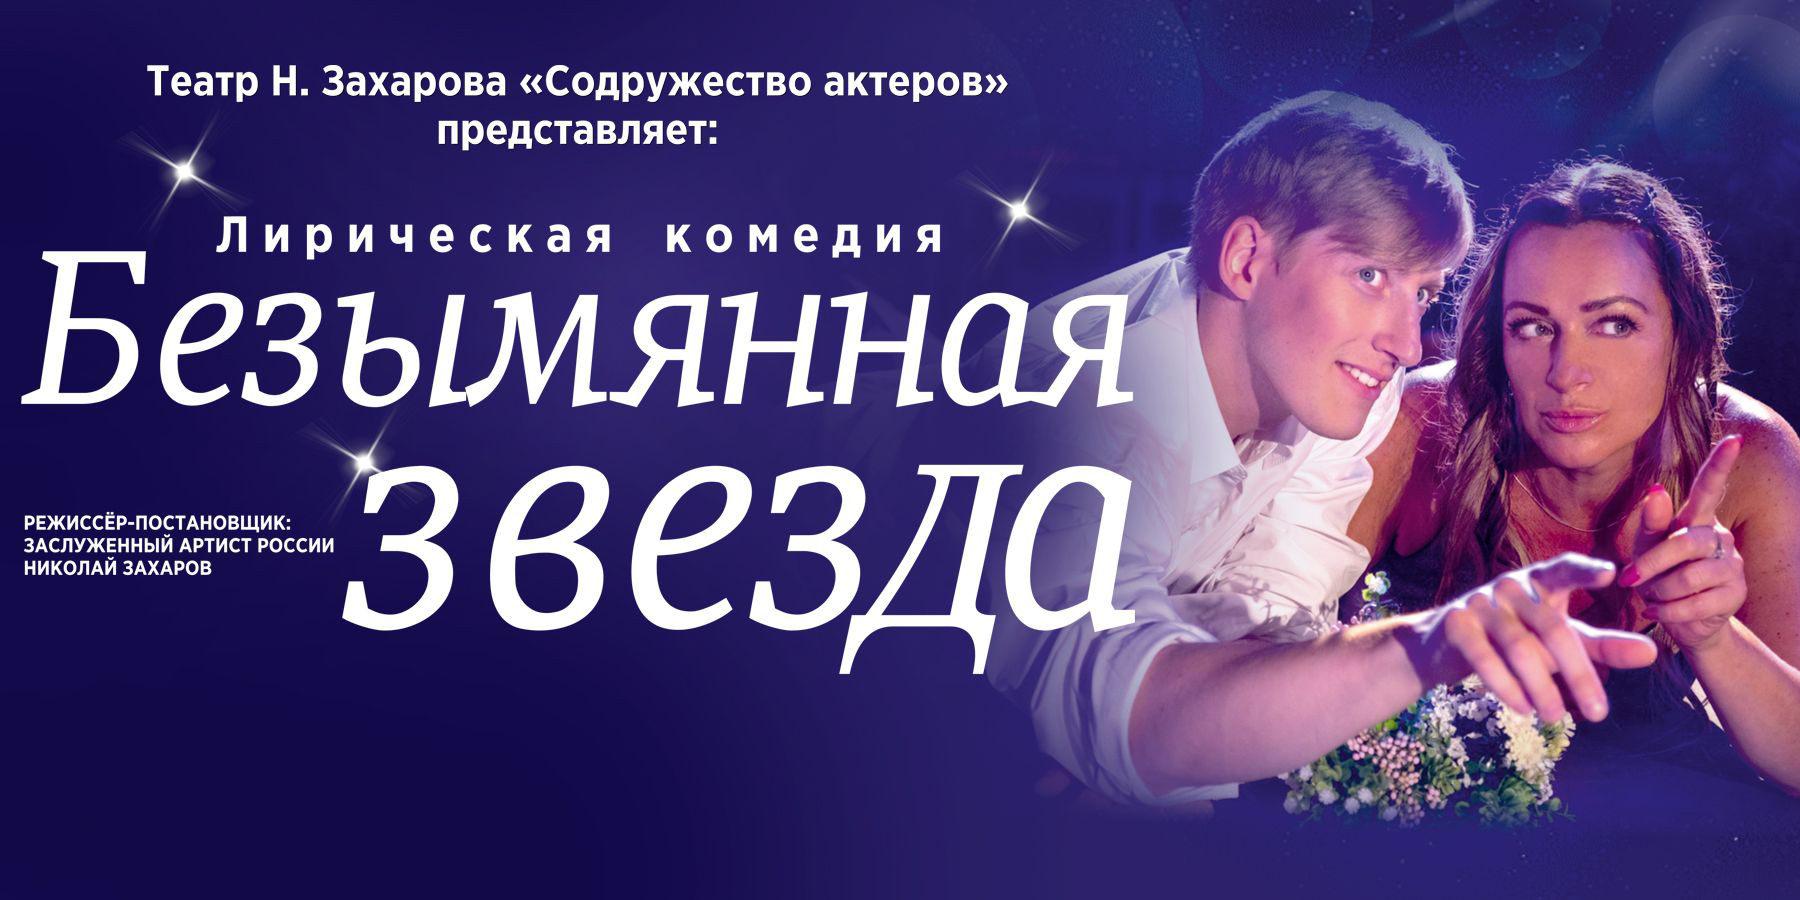 12 мая, 19:00, 1800 руб.Театр Николая Захарова. Калининград, ул. Глазунова, 9 